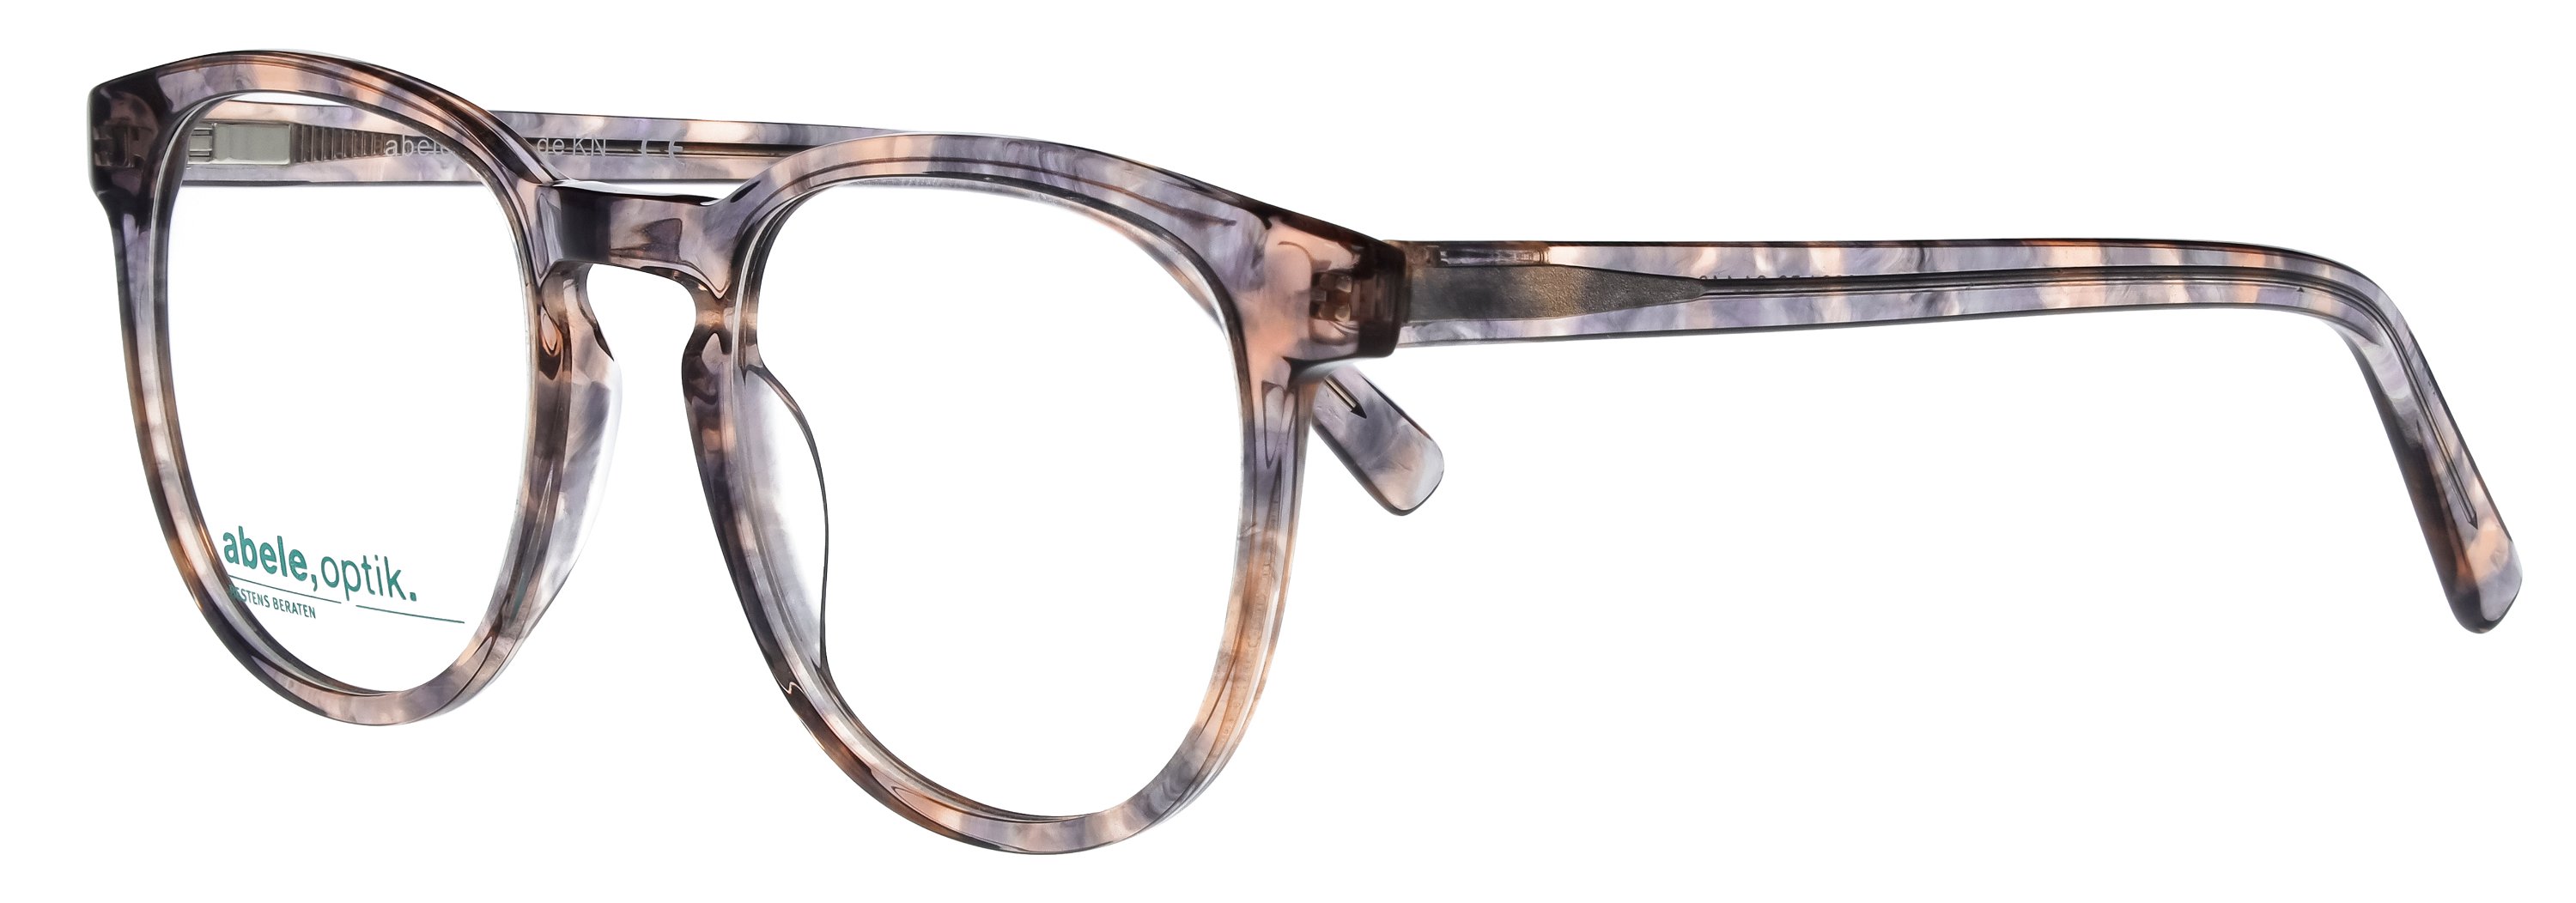 Das Bild zeigt die Korrektionsbrille 148831 von der Marke Abele Optik in apricot-grau gemustert.